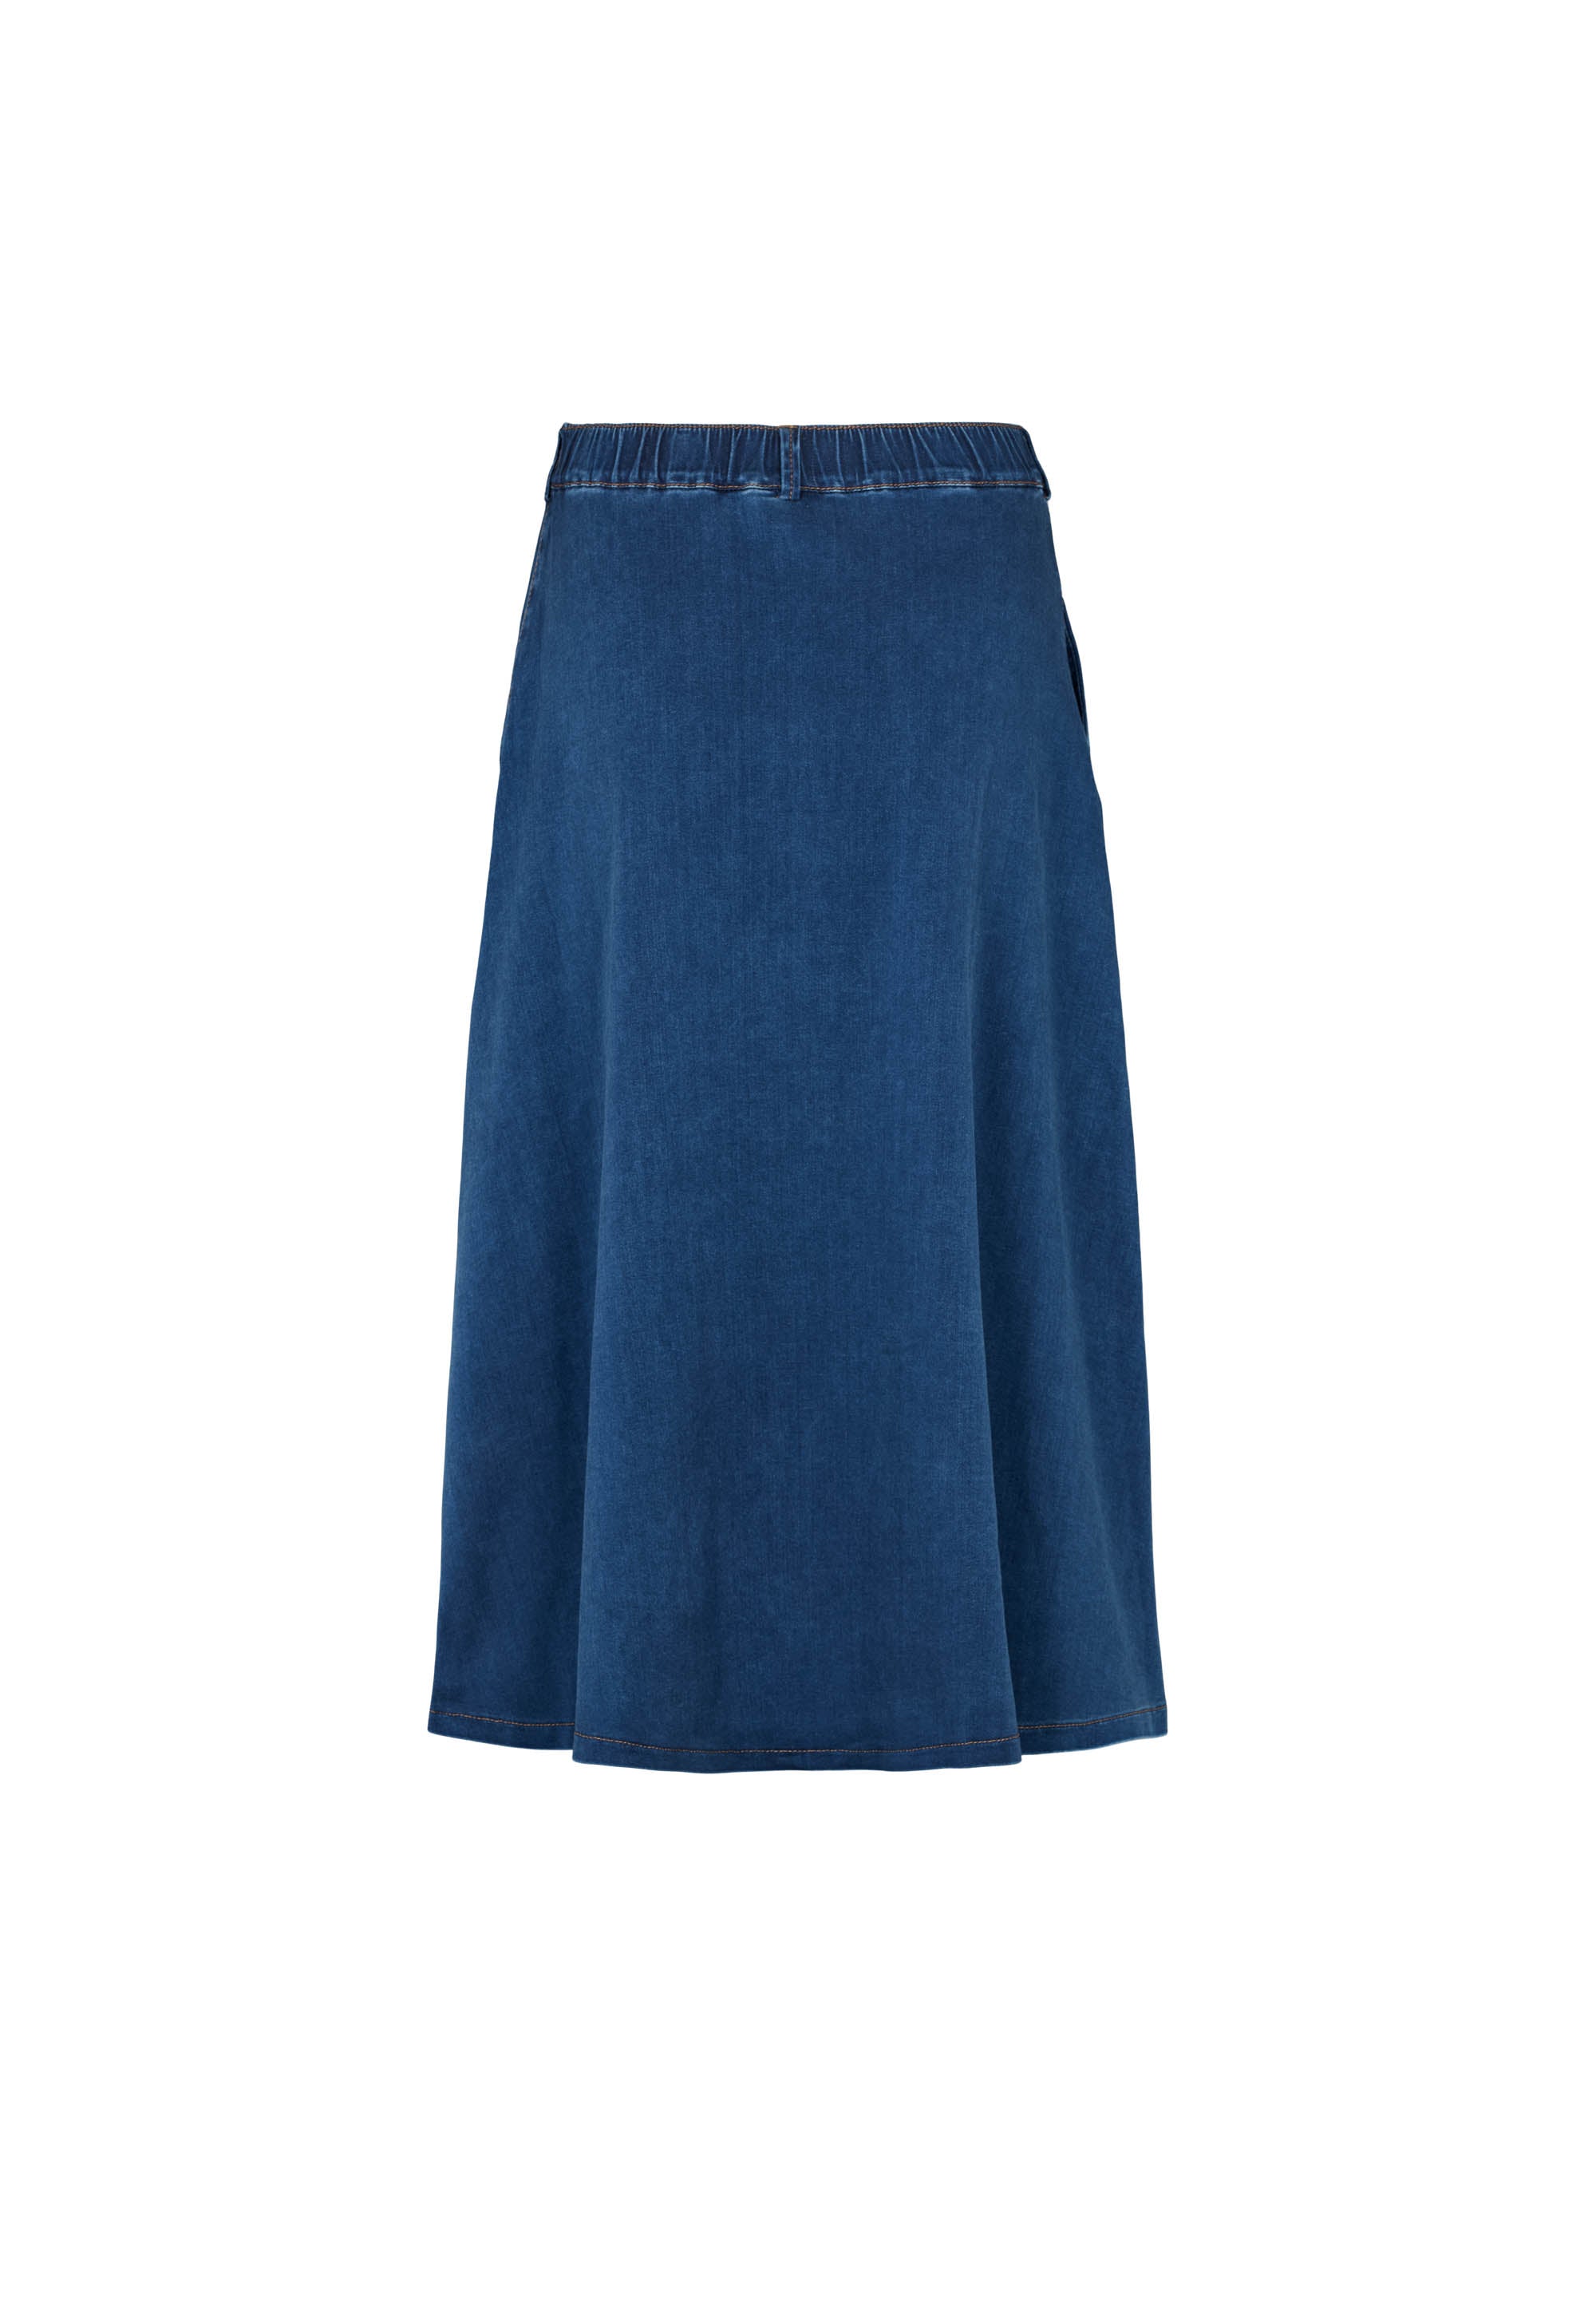 LAURIE Asta Skirt - 80 cm Skirts 44506 Medium Blue Denim